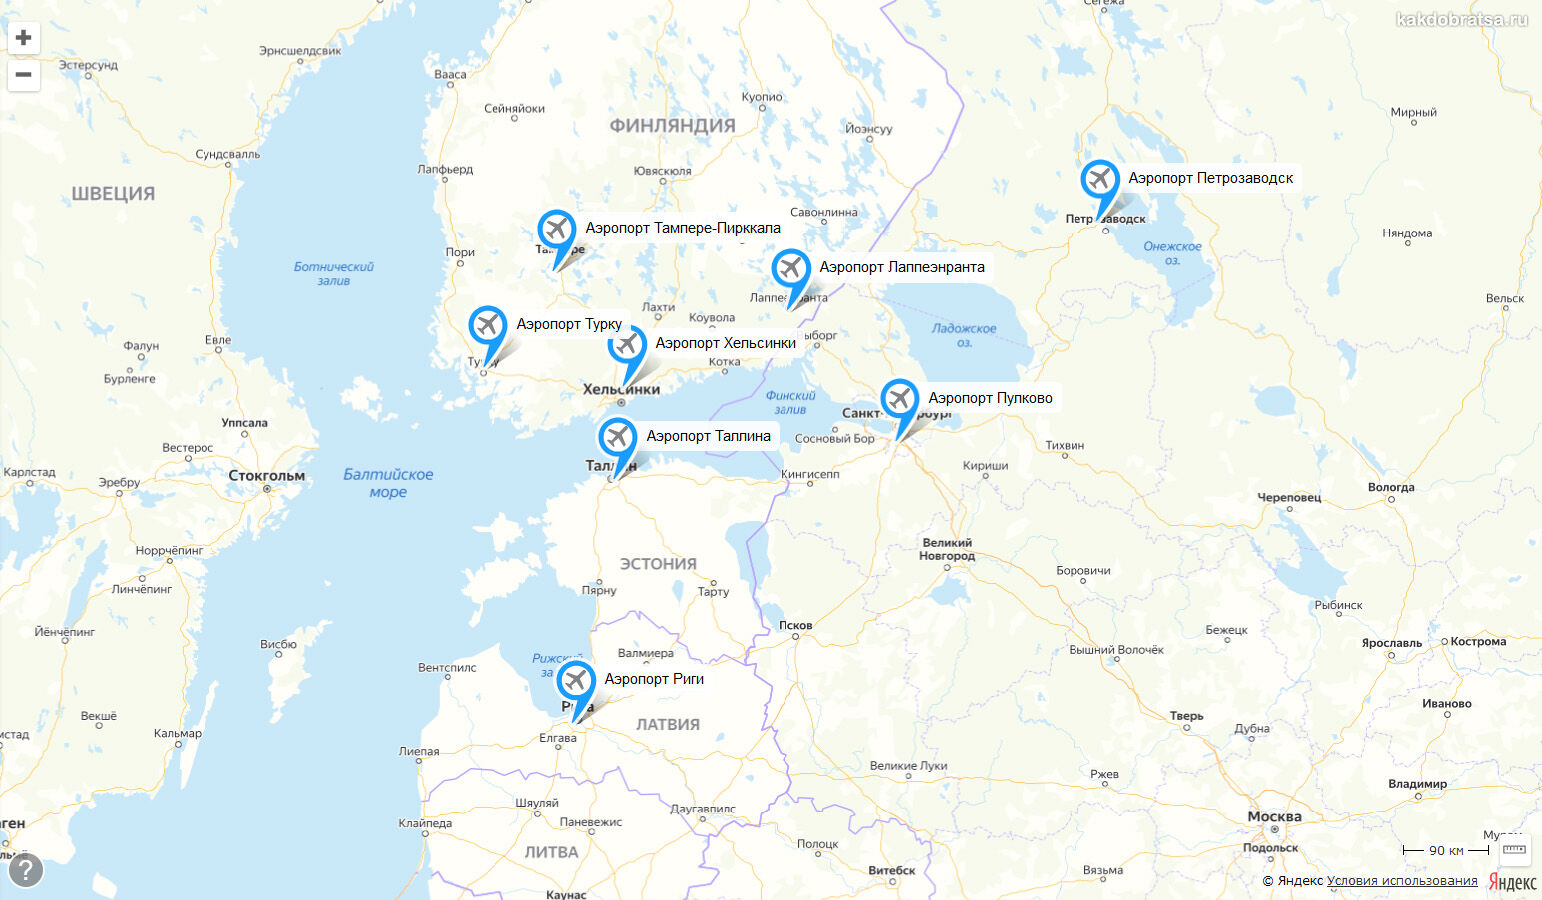 Аэропорты рядом с Санкт-Петербургом на карте